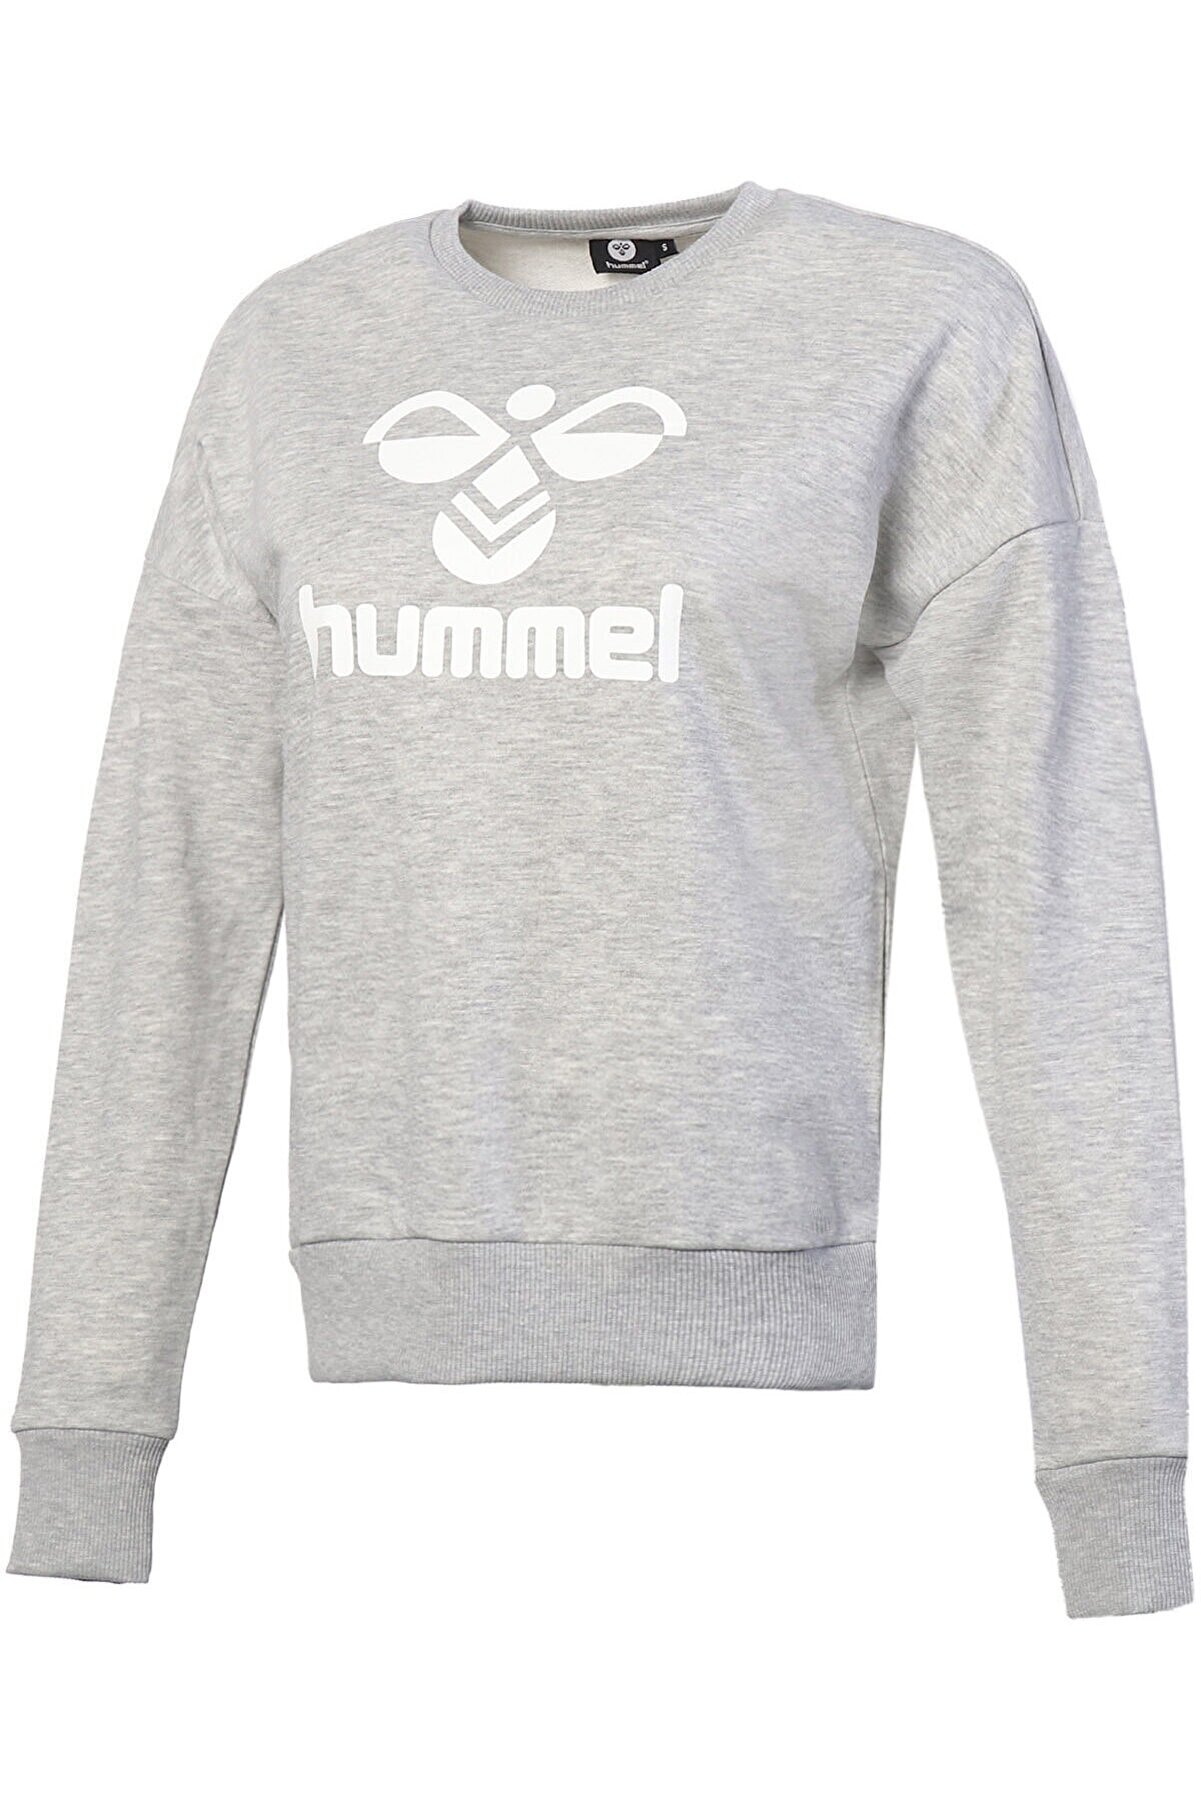 HUMMEL Helsinge Gri Kadın Sweatshirt